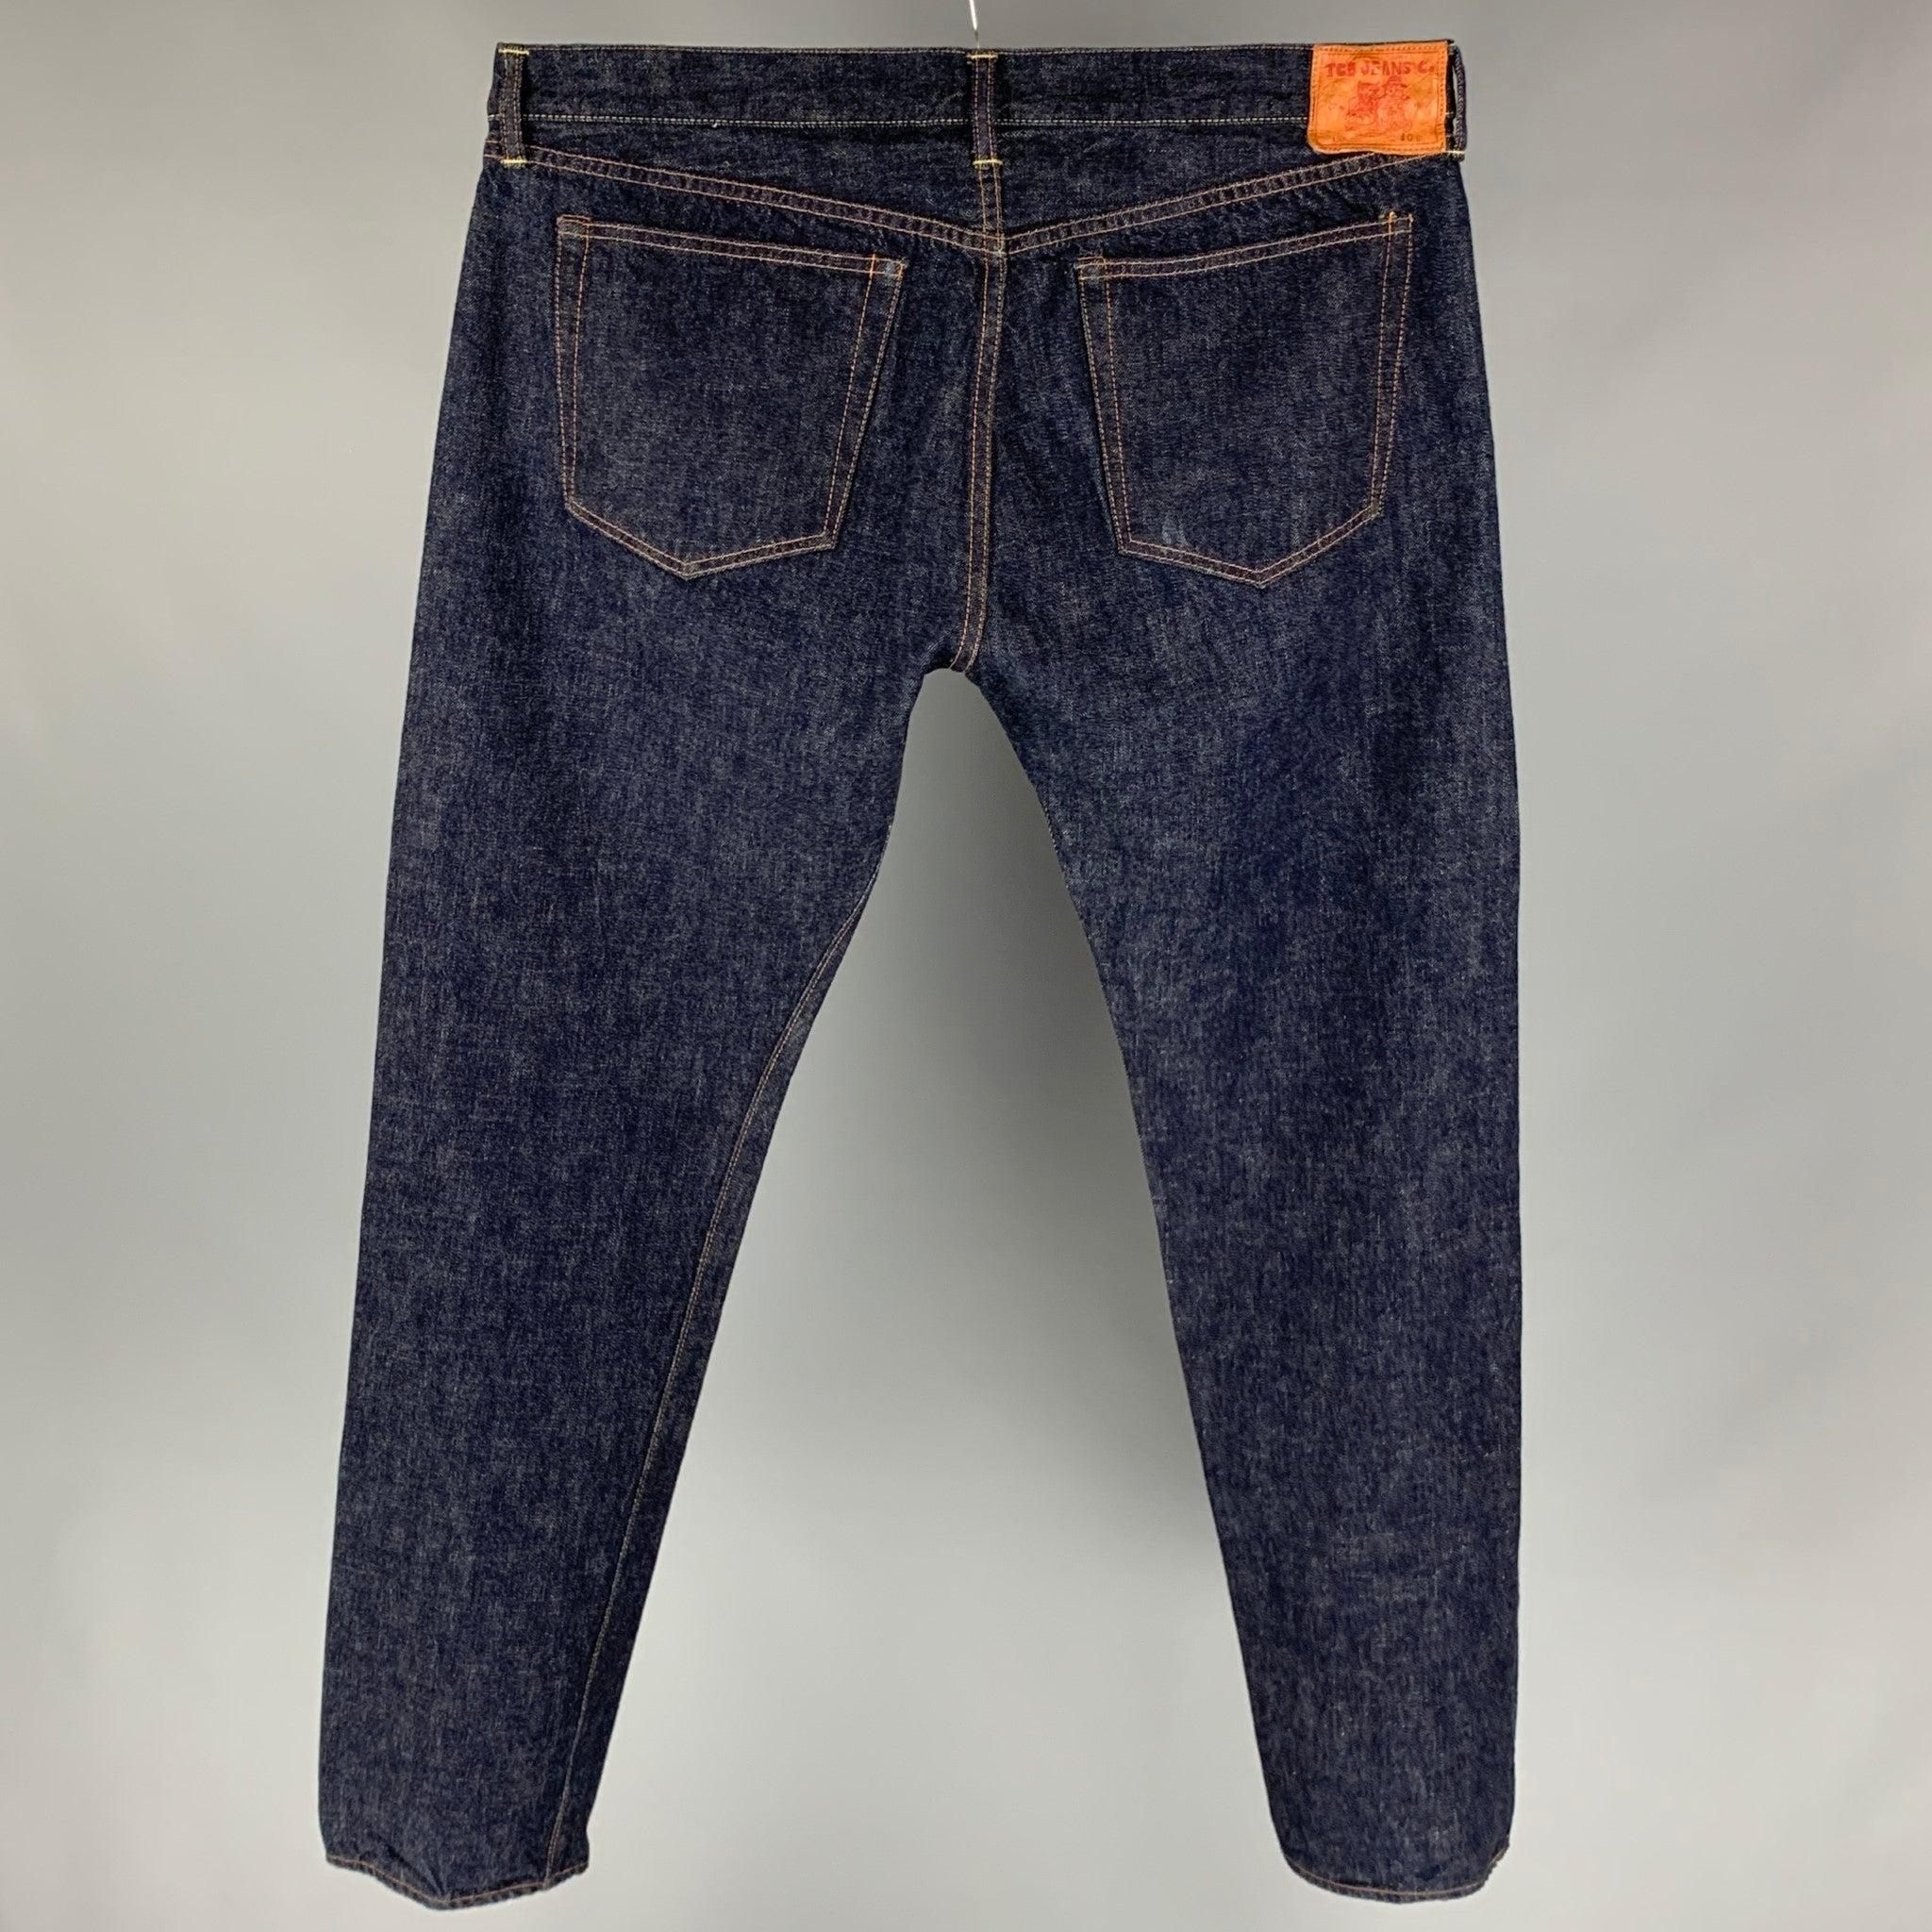 Le pantalon TCB Jeans se décline en denim selvedge indigo et présente une jambe droite, des coutures contrastées et une braguette à boutons. Fabriqué au Japon.
Très bien
Etat d'occasion. 

Marqué :   Etiquette de taille enlevée.  

Mesures : 
 